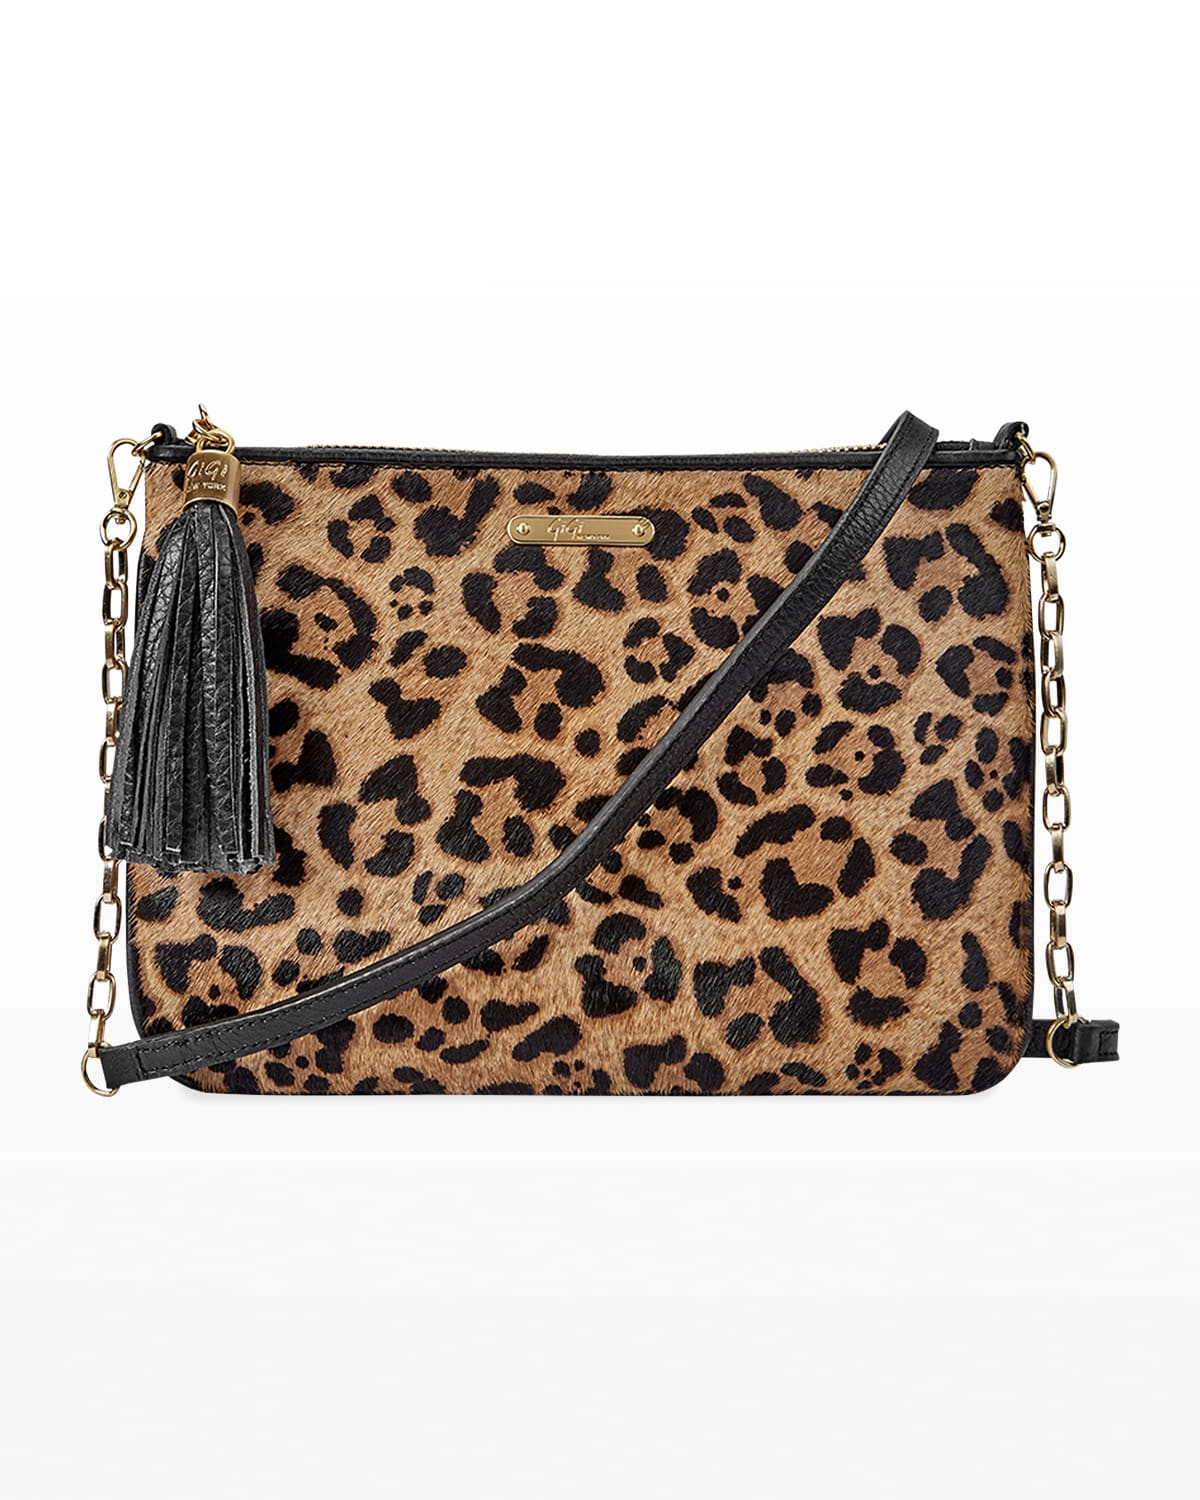 New leopard print handbag